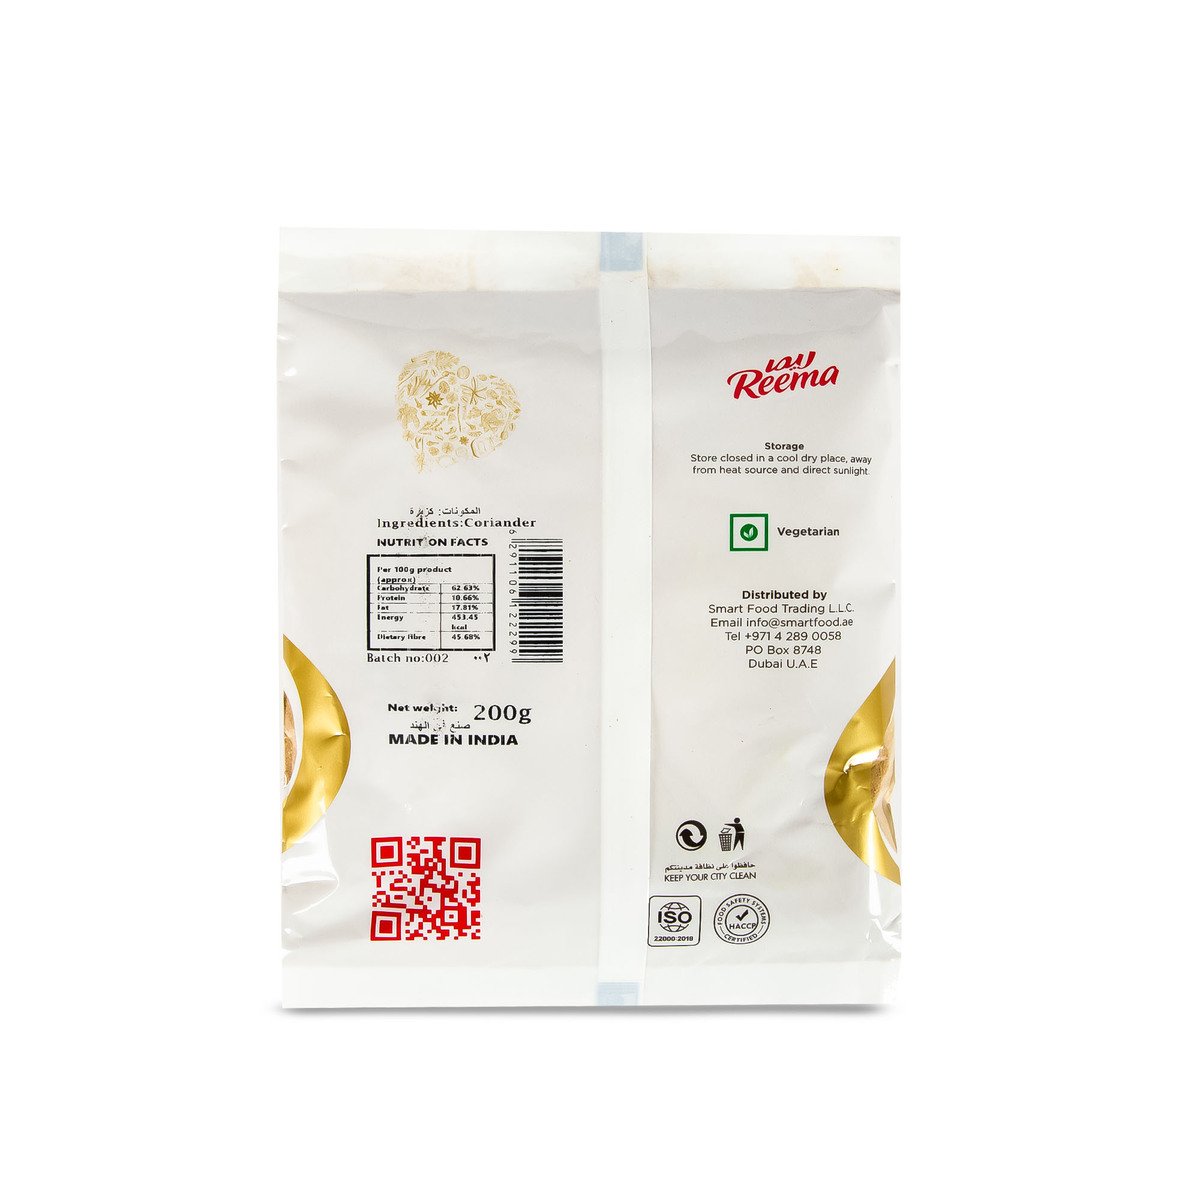 Reema Gold Coriander Powder 200 g